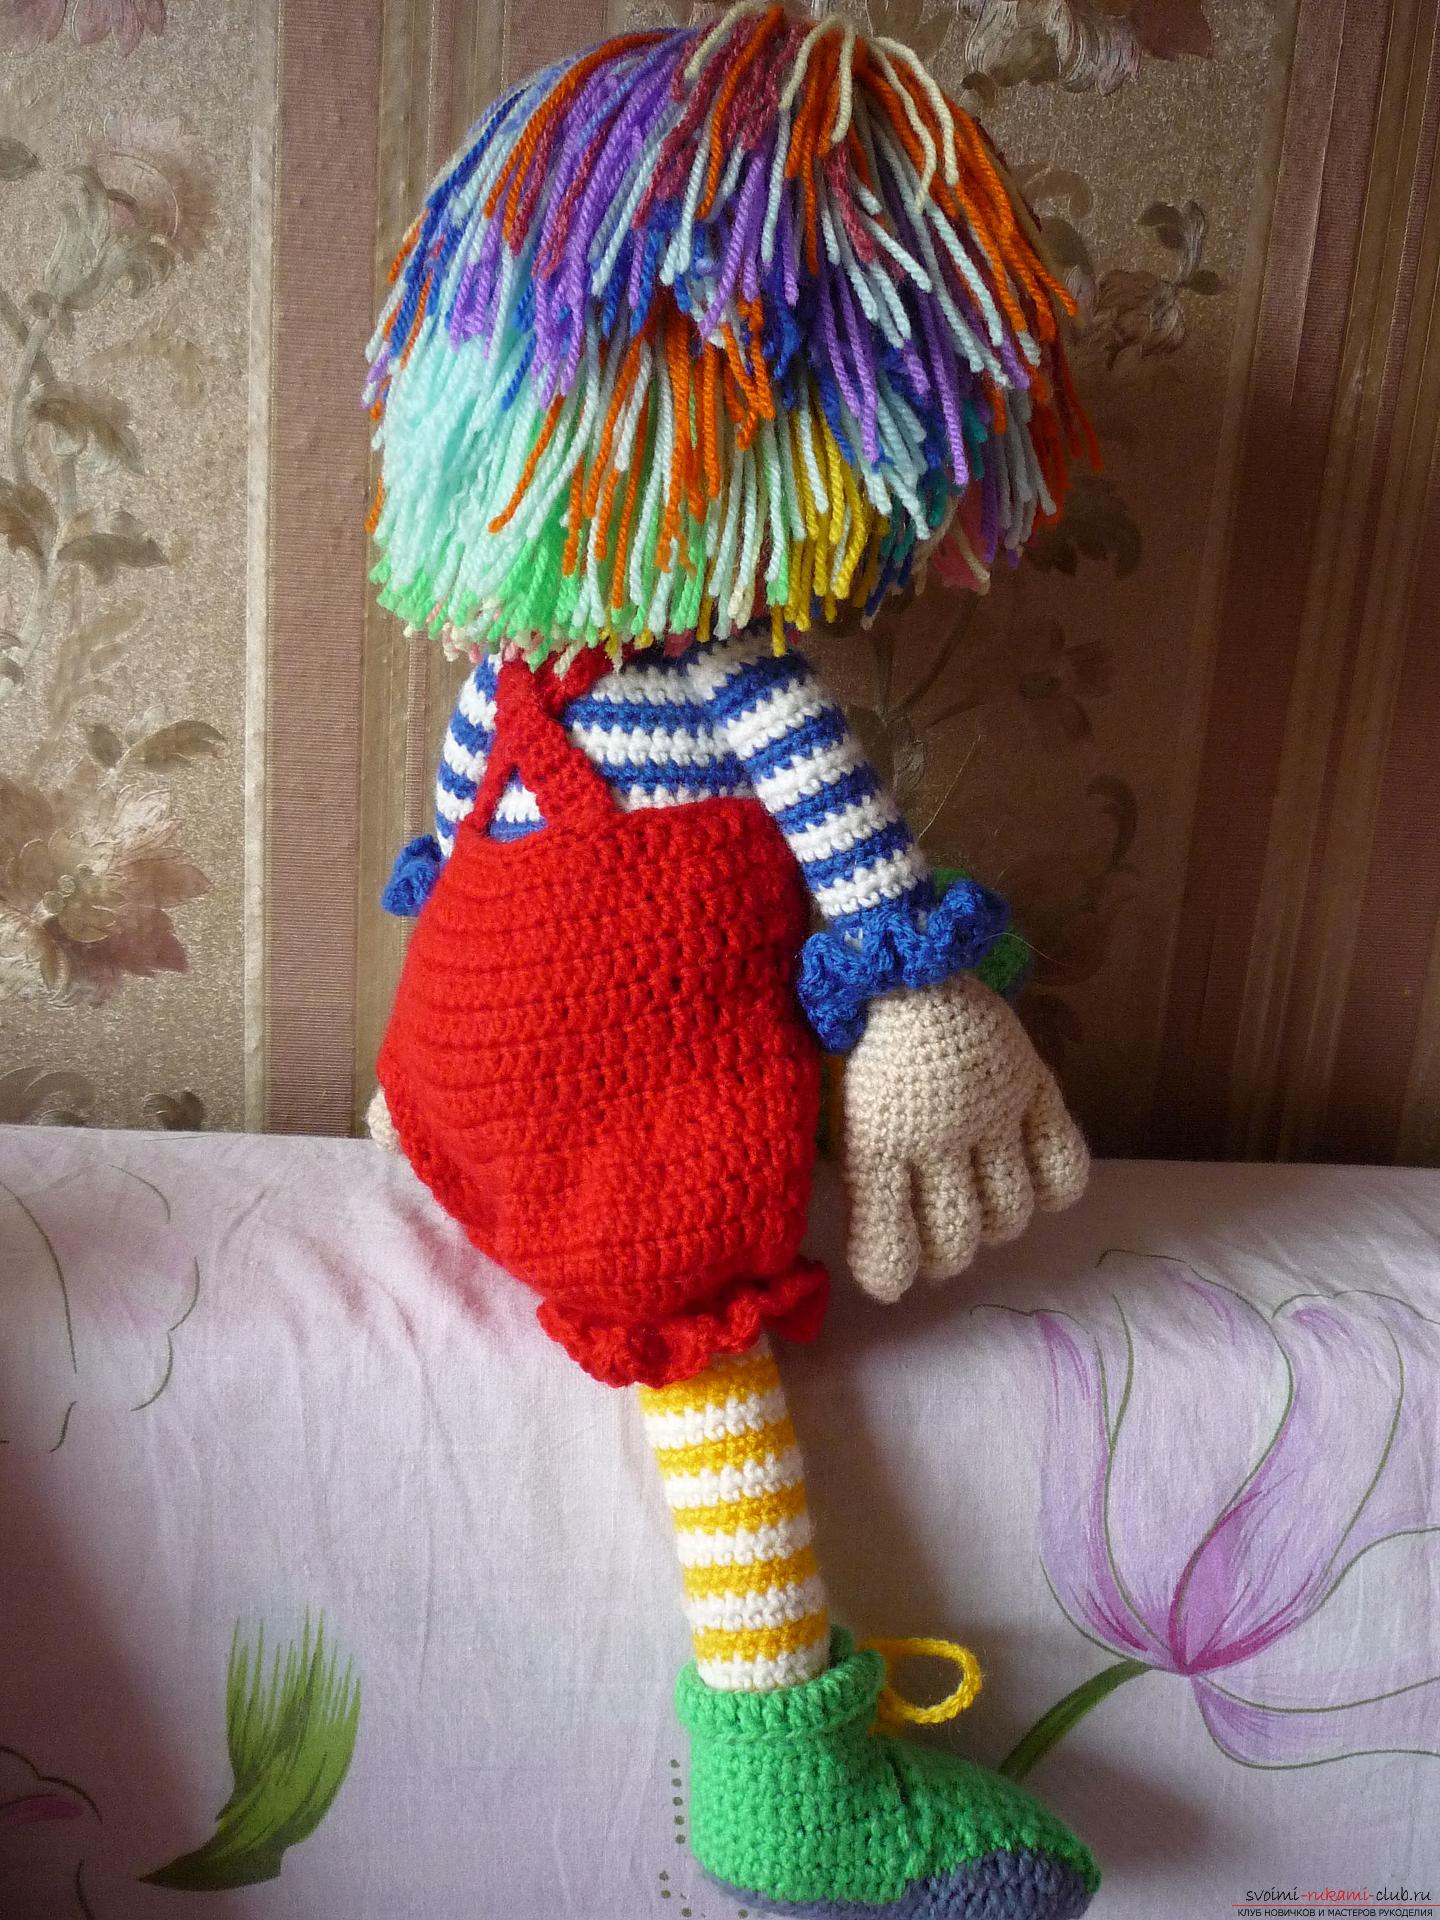 Подробные фотографии игрушки клоуна, связанного крючком из разноцветной пряжи. Фото №6